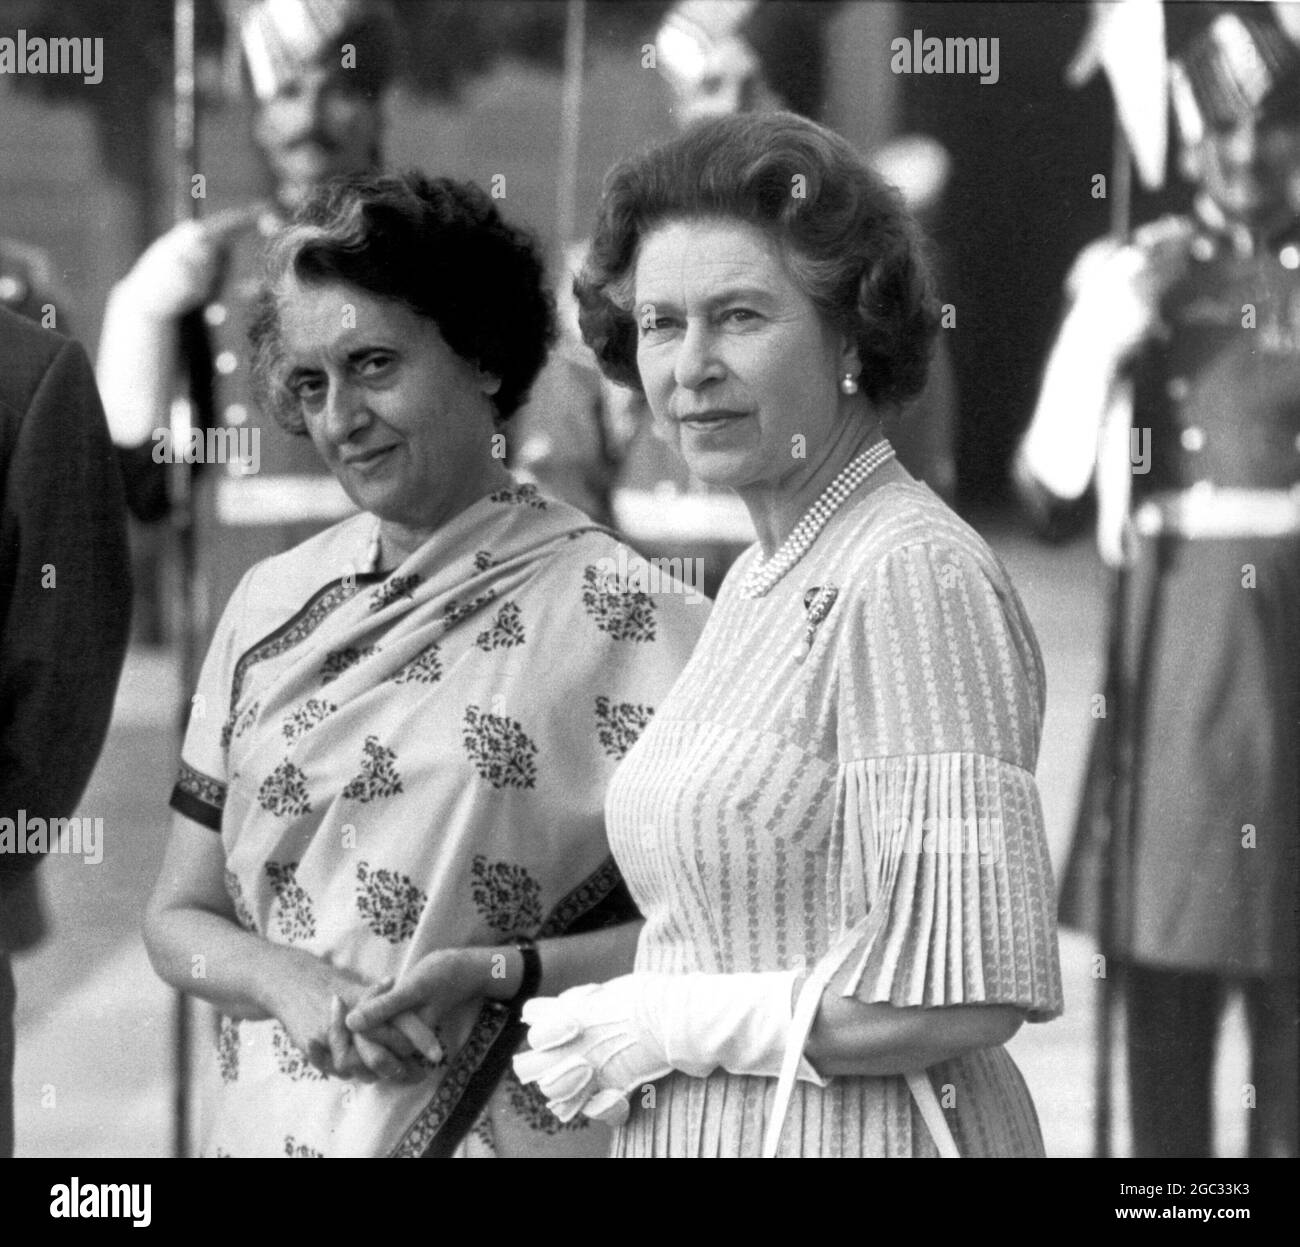 Frau Indira Gandhi, Premierministerin von Indien mit Königin Elisabeth II. Während des Besuches der Königin in Indien. Neu Delhi - 17. November 1983 Stockfoto